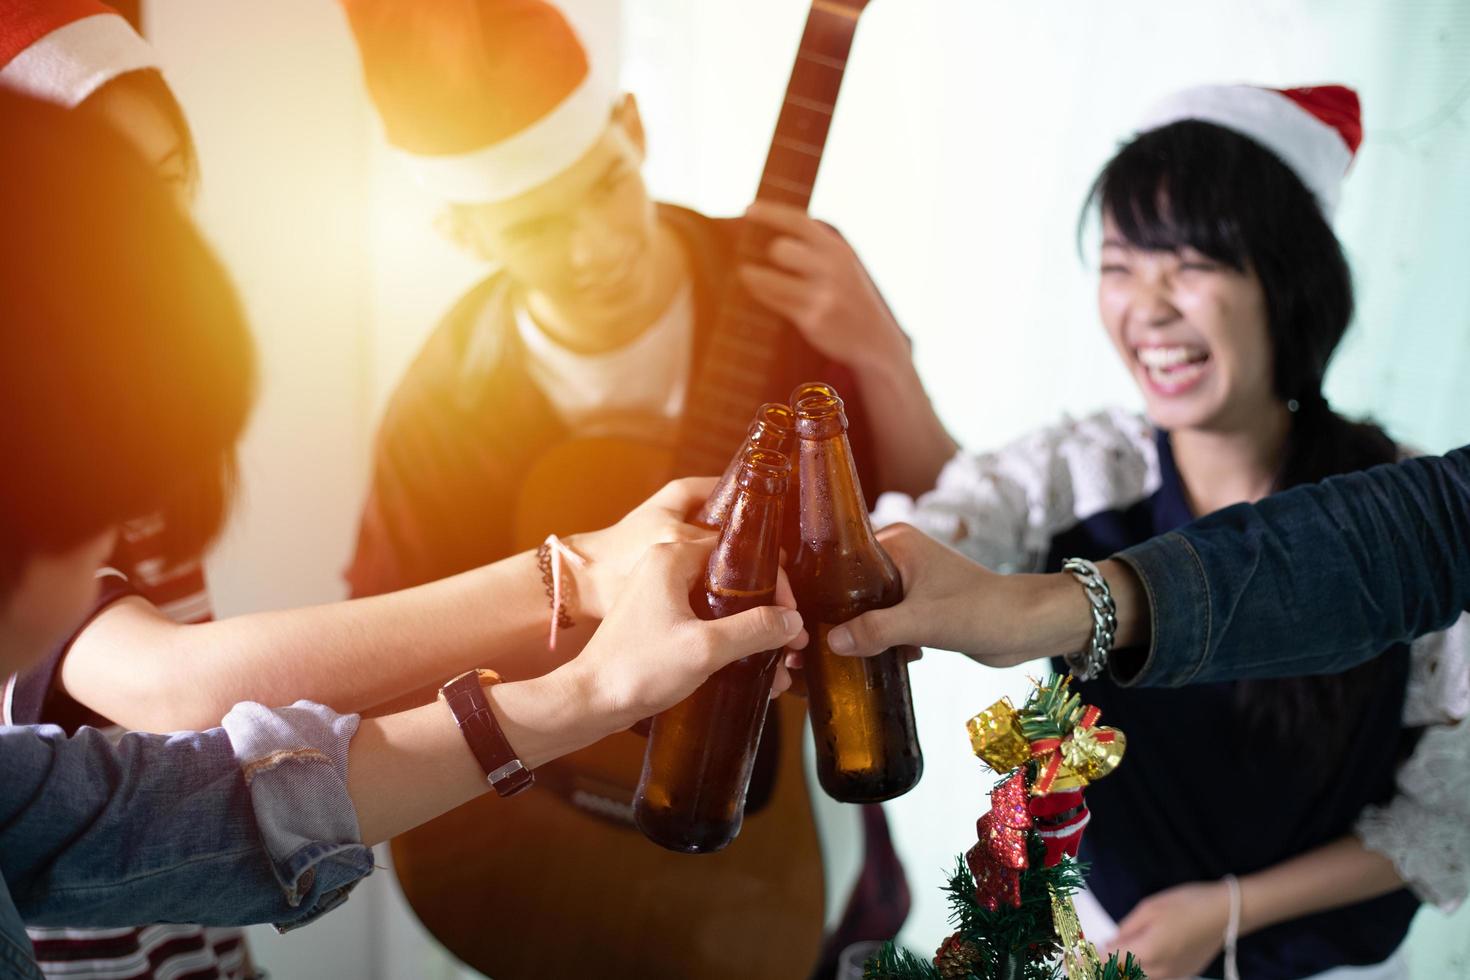 grupo asiático de amigos festejando com bebidas alcoólicas de cerveja e jovens desfrutando em um bar brindando coquetéis foto